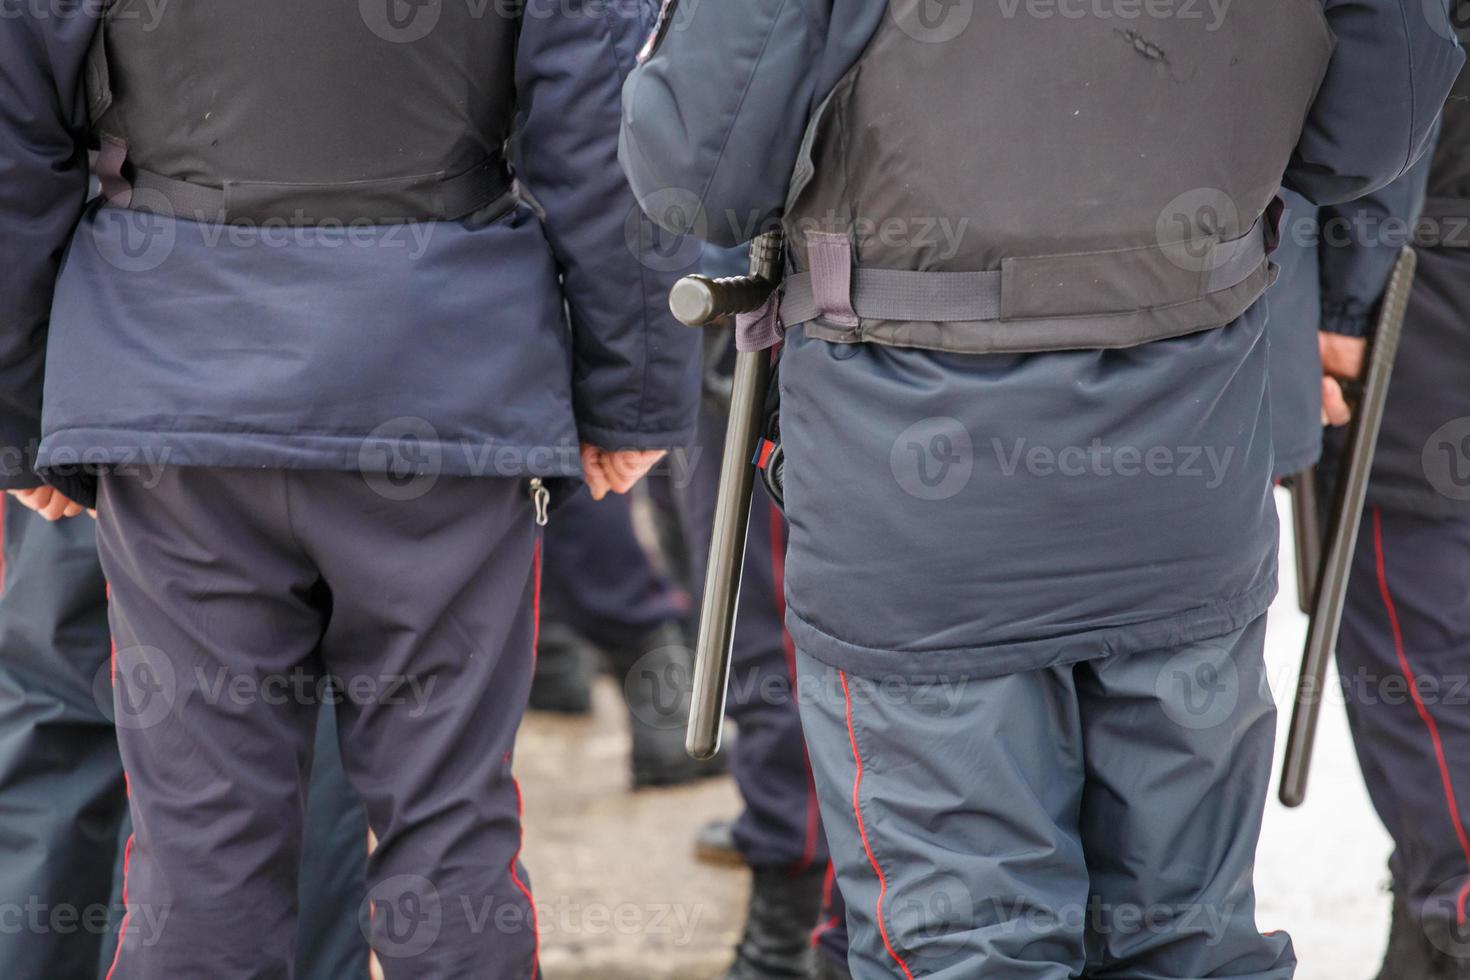 oficial de policía ruso con bastón tonfa de caucho negro colgando de su cinturón foto